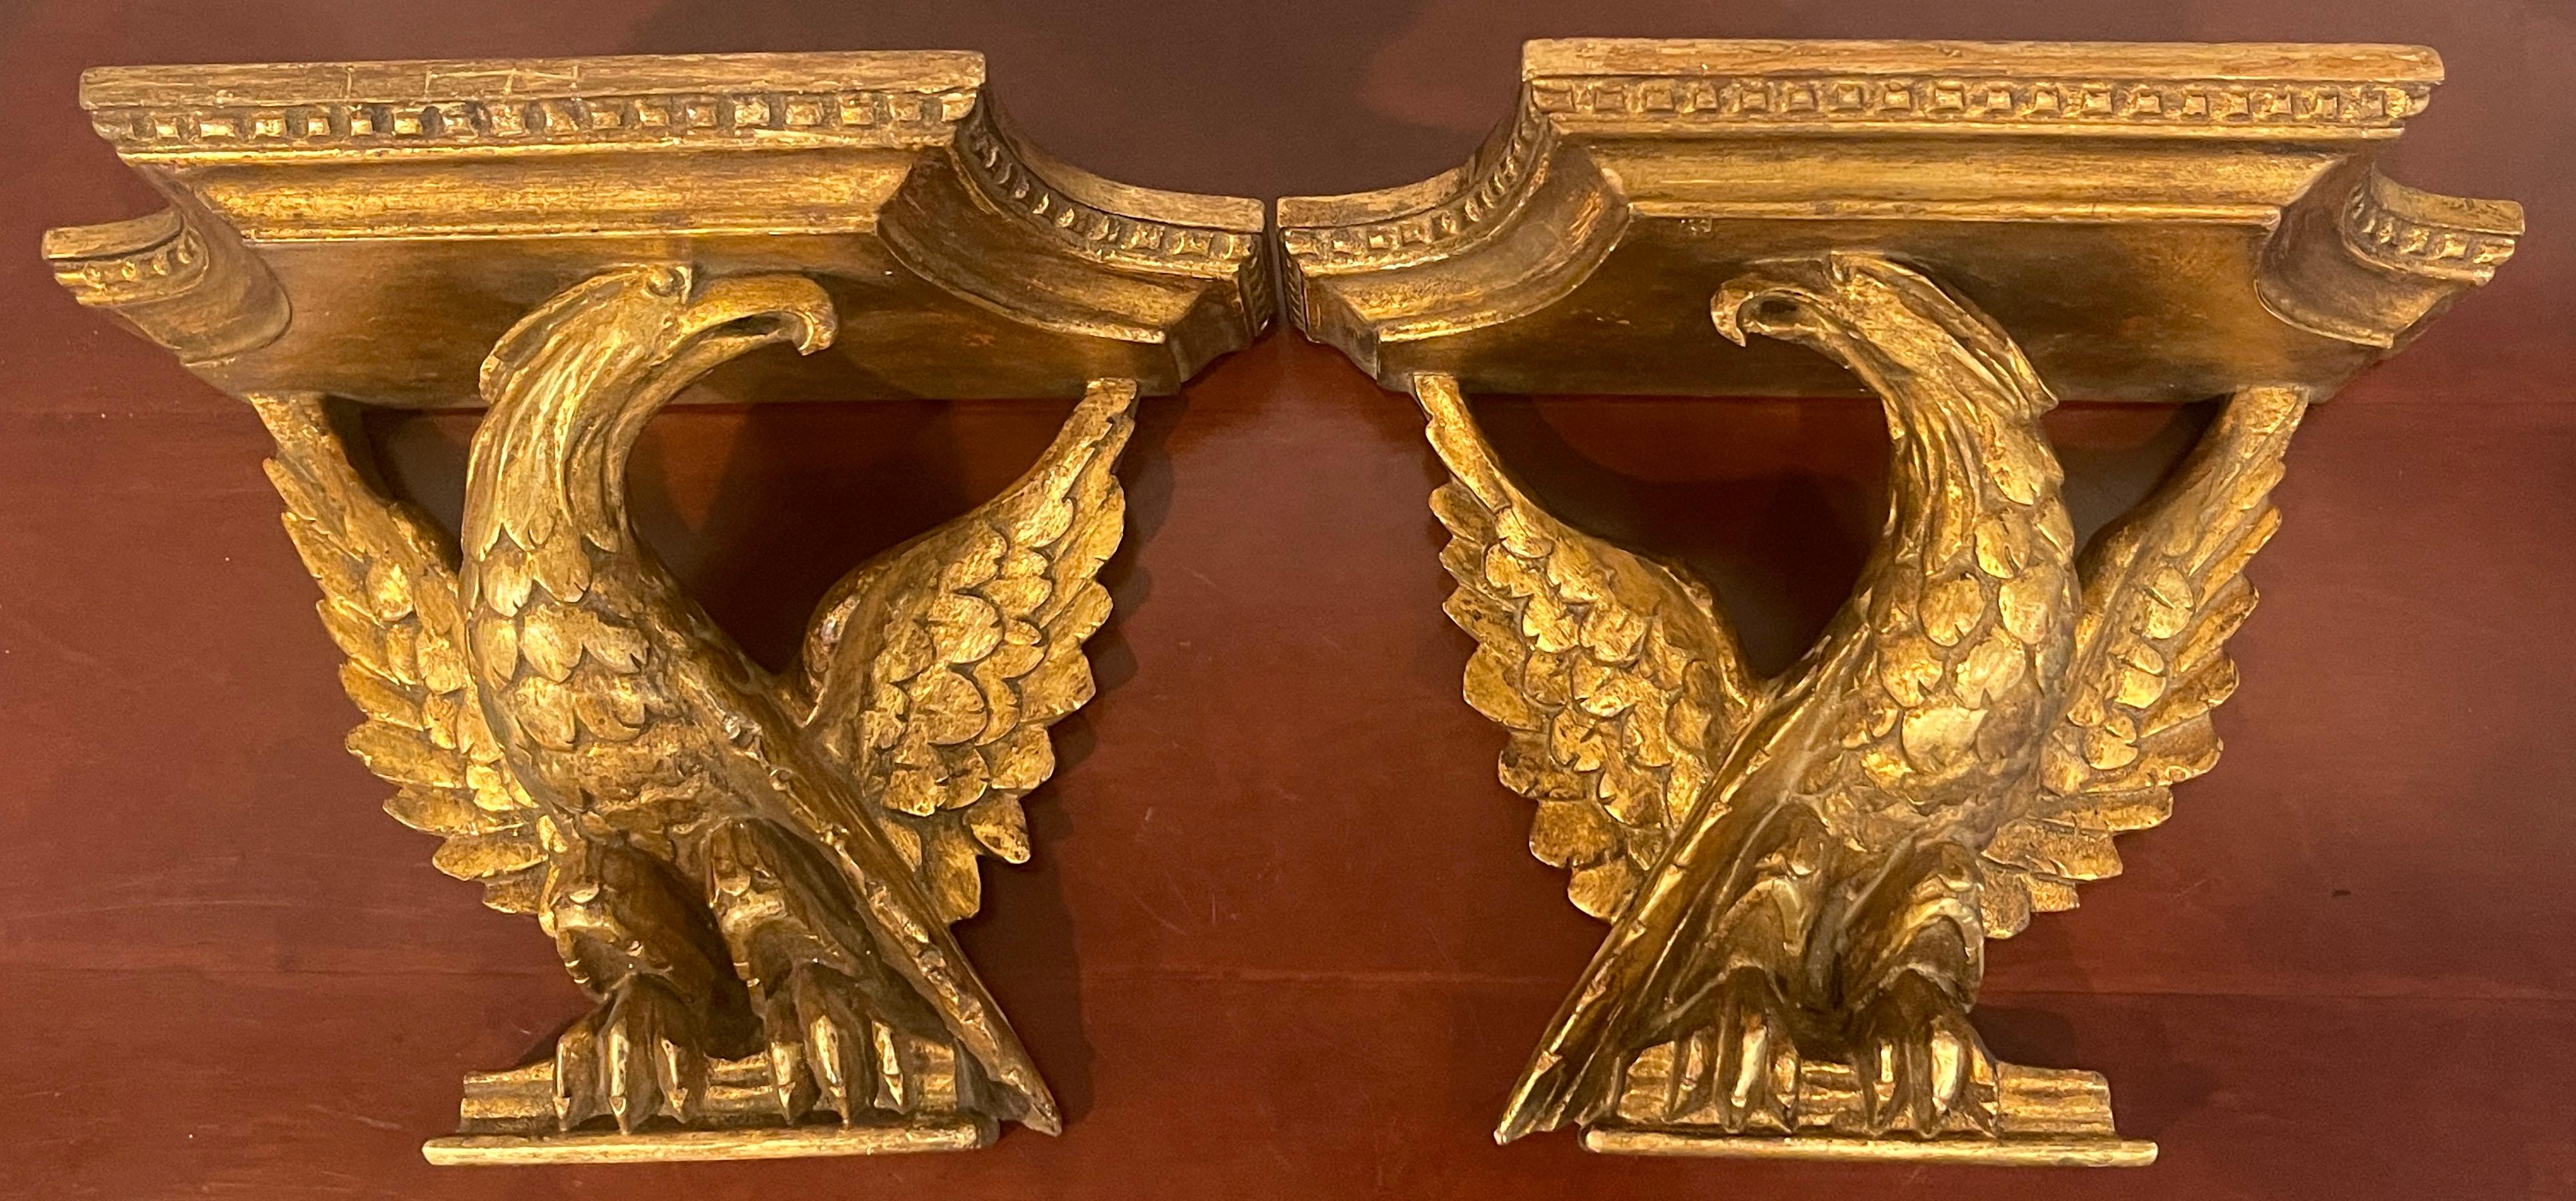 Zwei italienische neoklassische Wandregale aus geschnitztem Goldholz mit Adlermotiv. Jedes Regal zeigt einen sitzenden Adler mit ausgebreiteten Flügeln, der fein geschnitzt ist. Der eine schaut nach rechts, der andere nach links. Mit einer